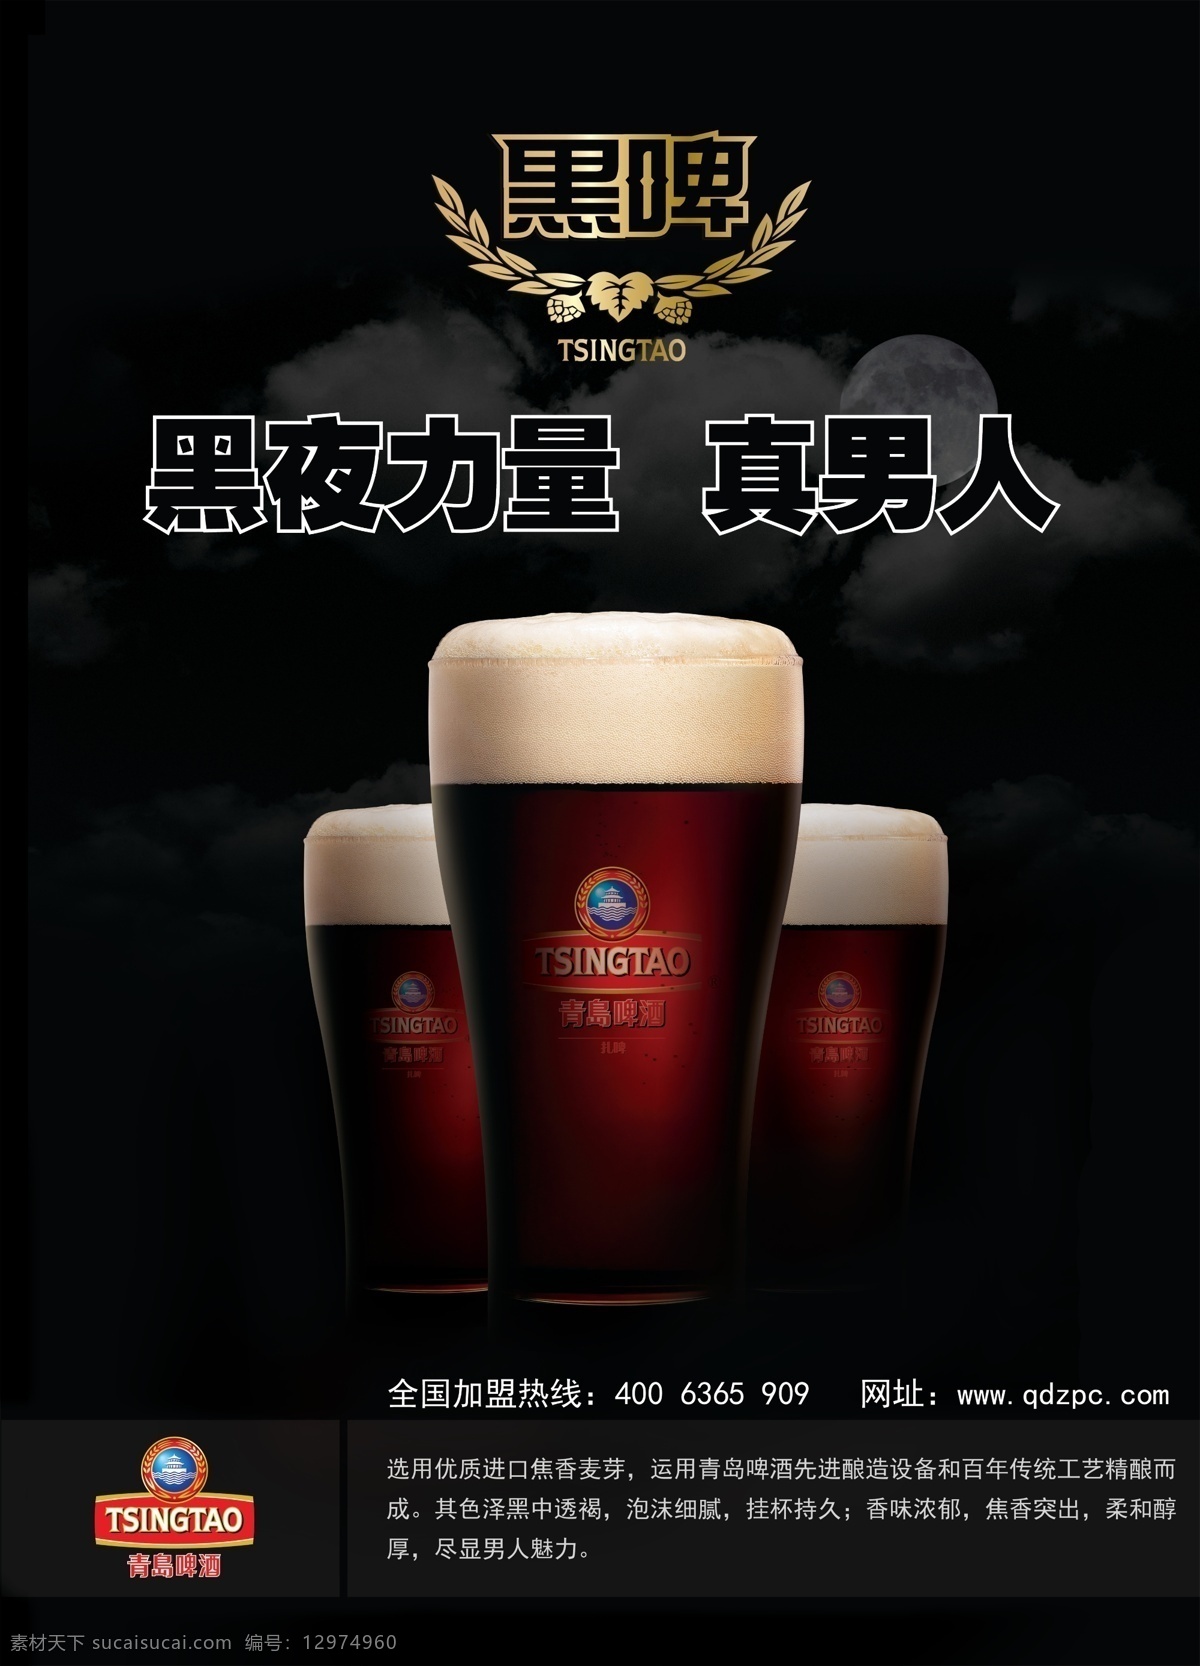 青岛黑啤 青啤标志 黑啤 酒杯 青岛啤酒 灰色背景 分层 广告设计模板 源文件